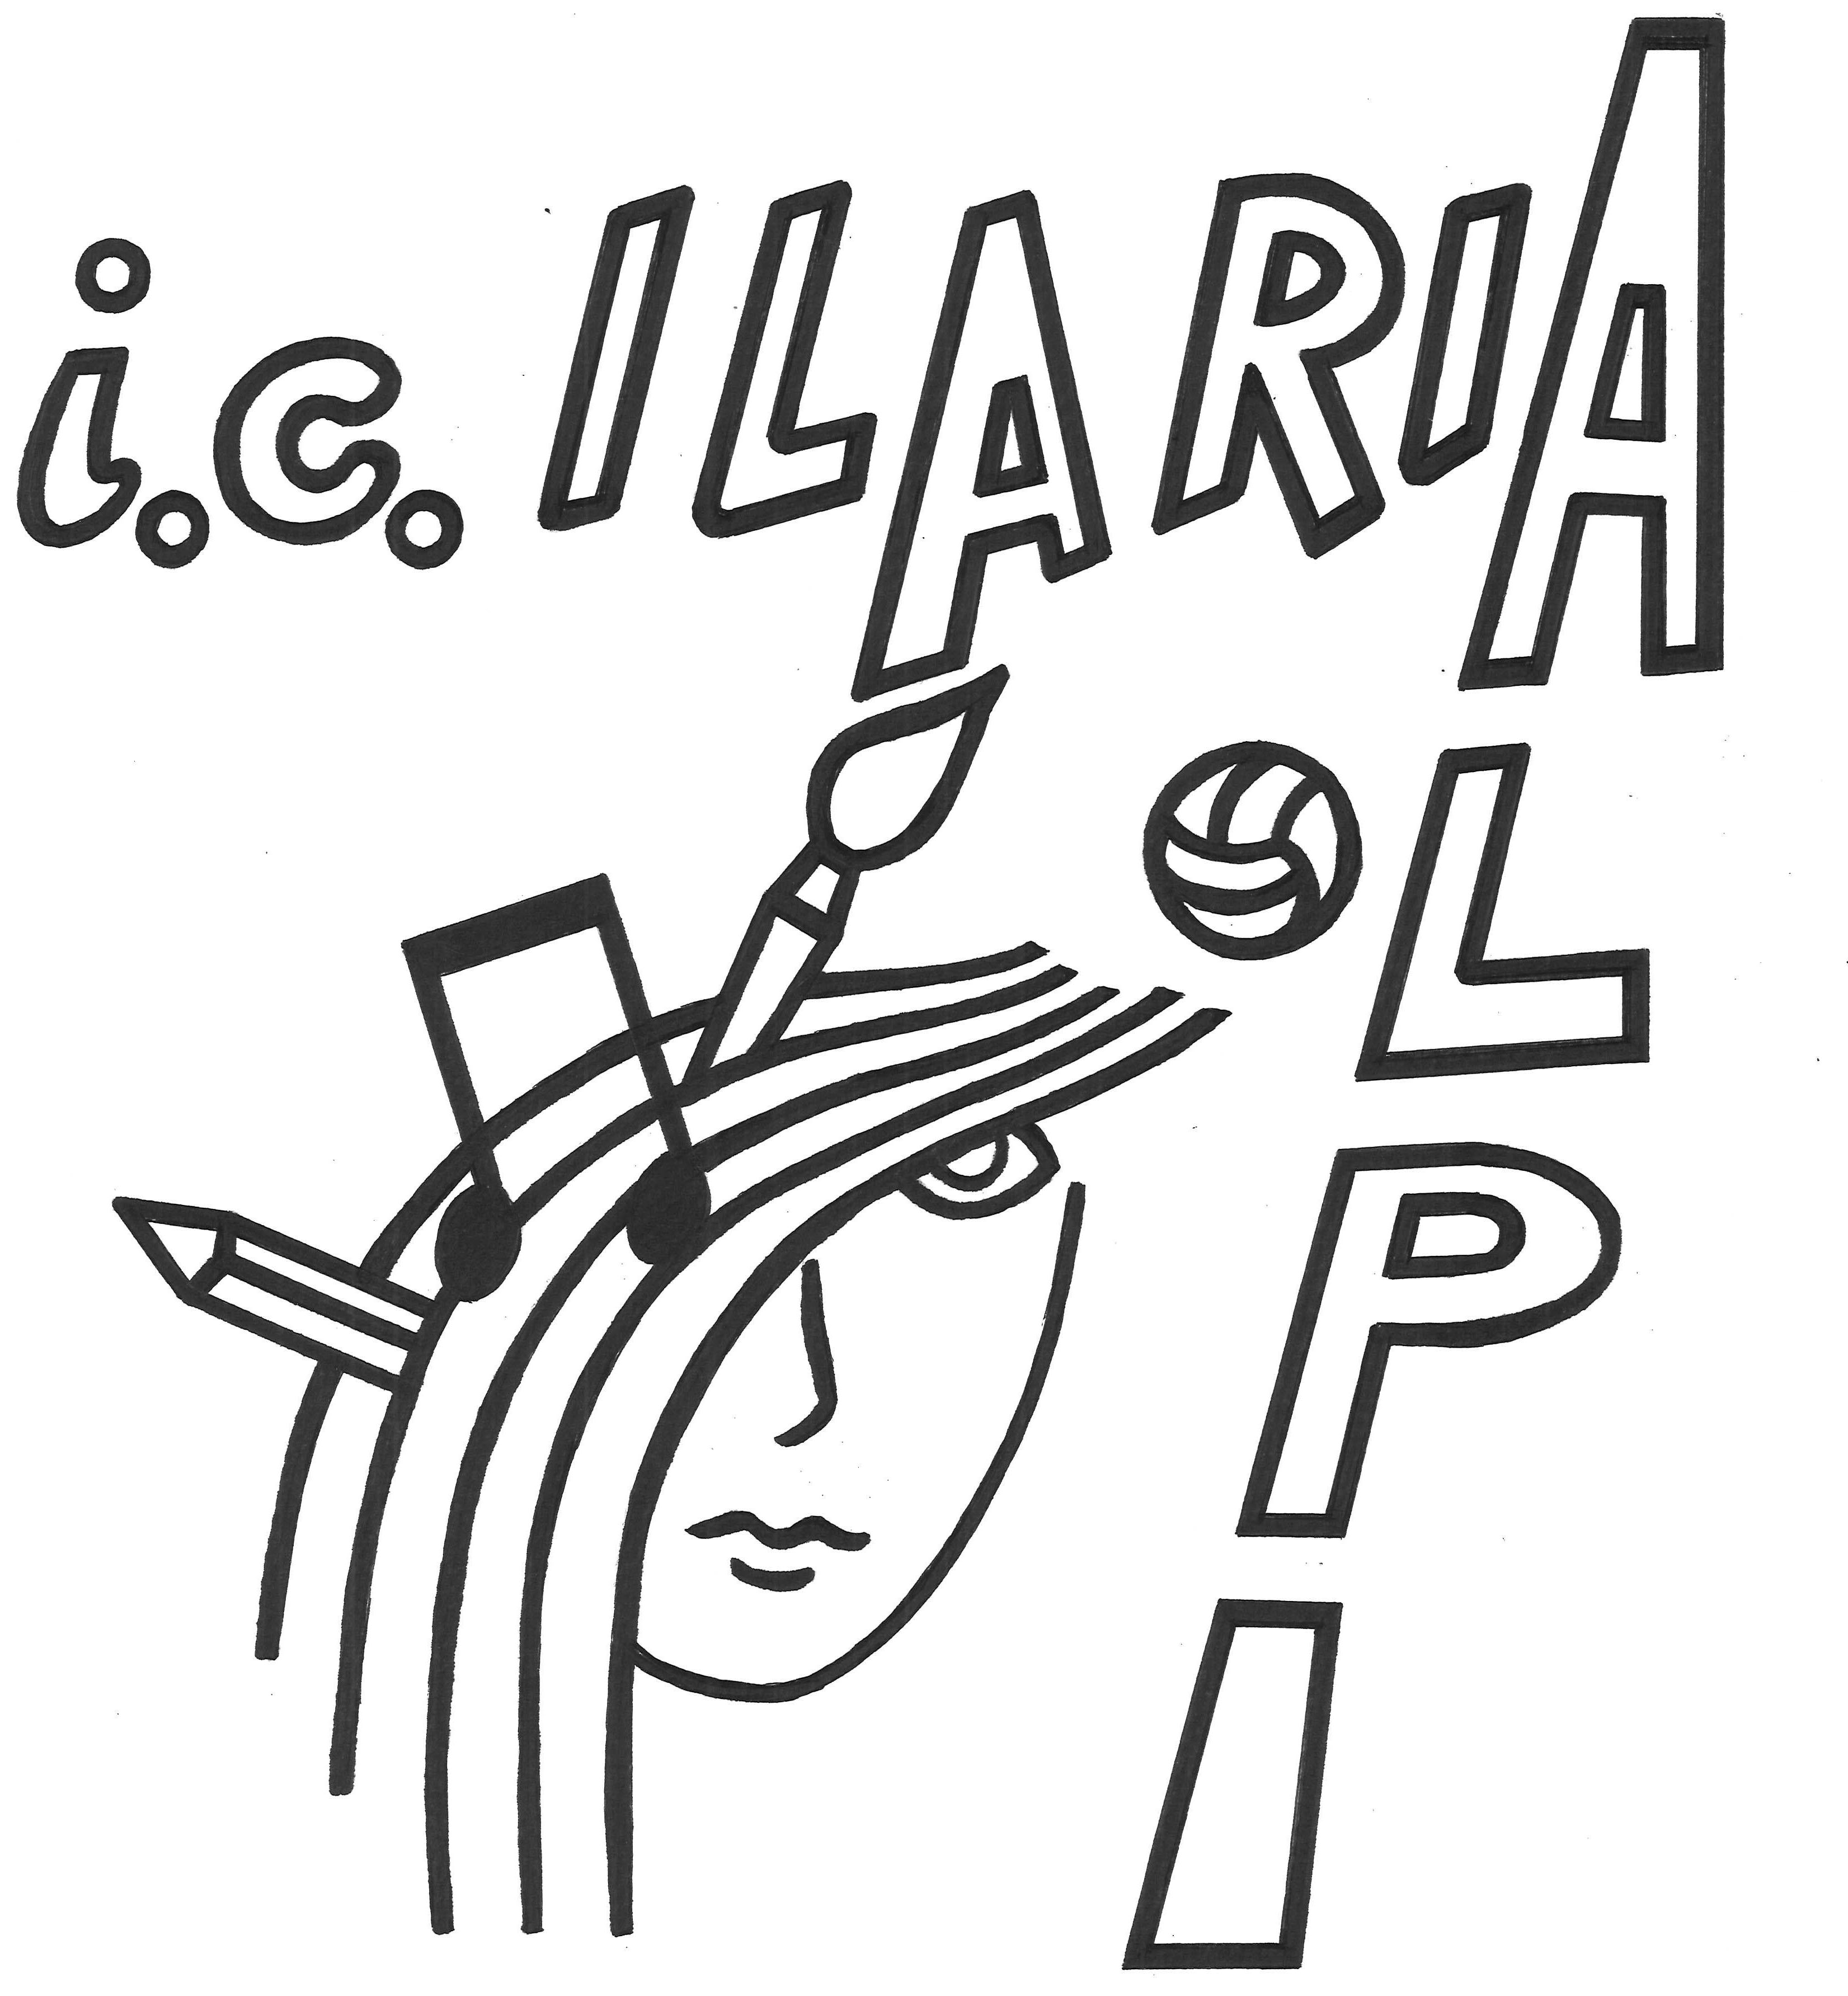 IC Ilaria Alpi